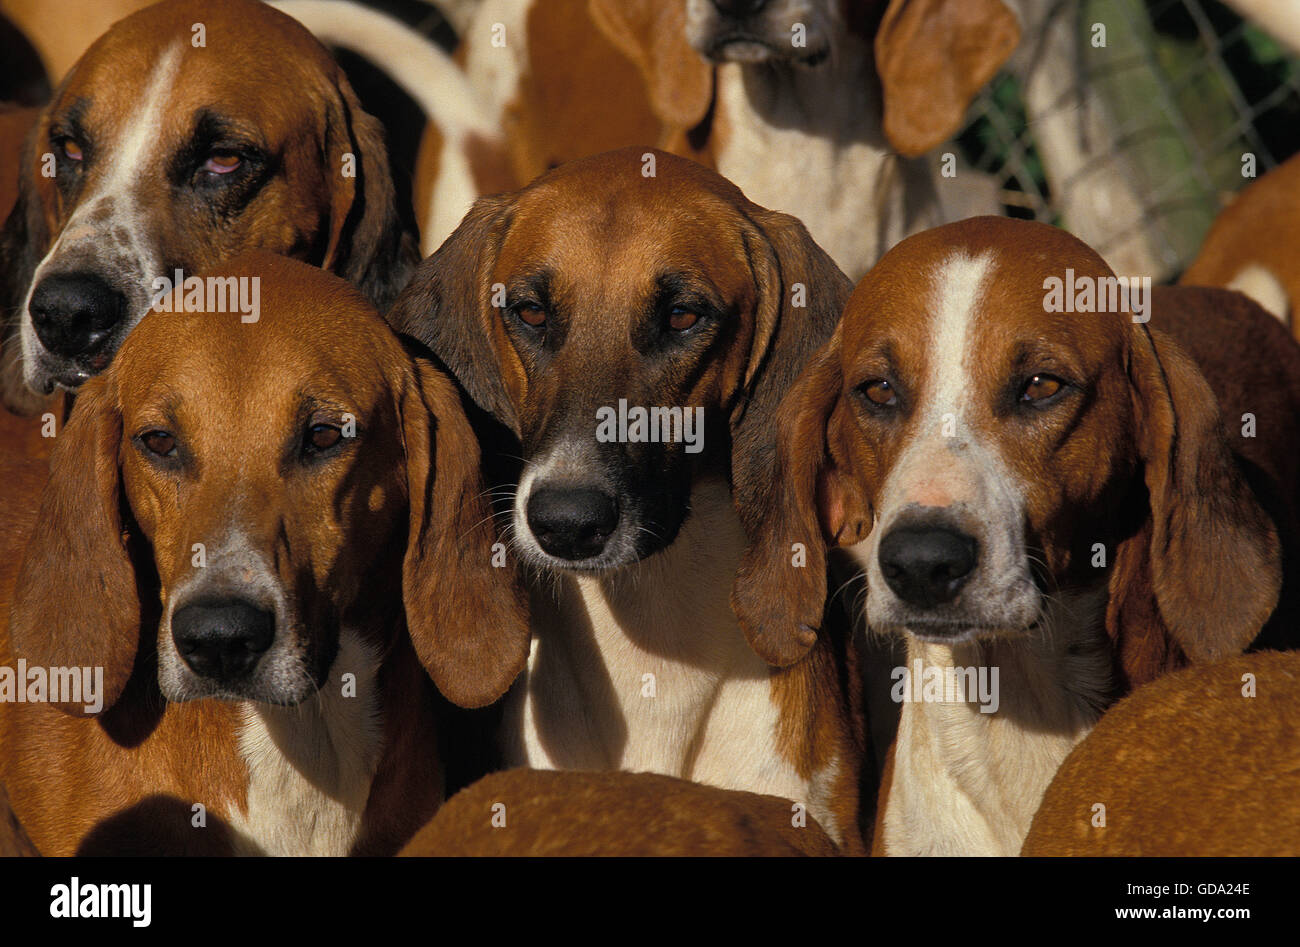 Portraits of Poitevin Dog Stock Photo